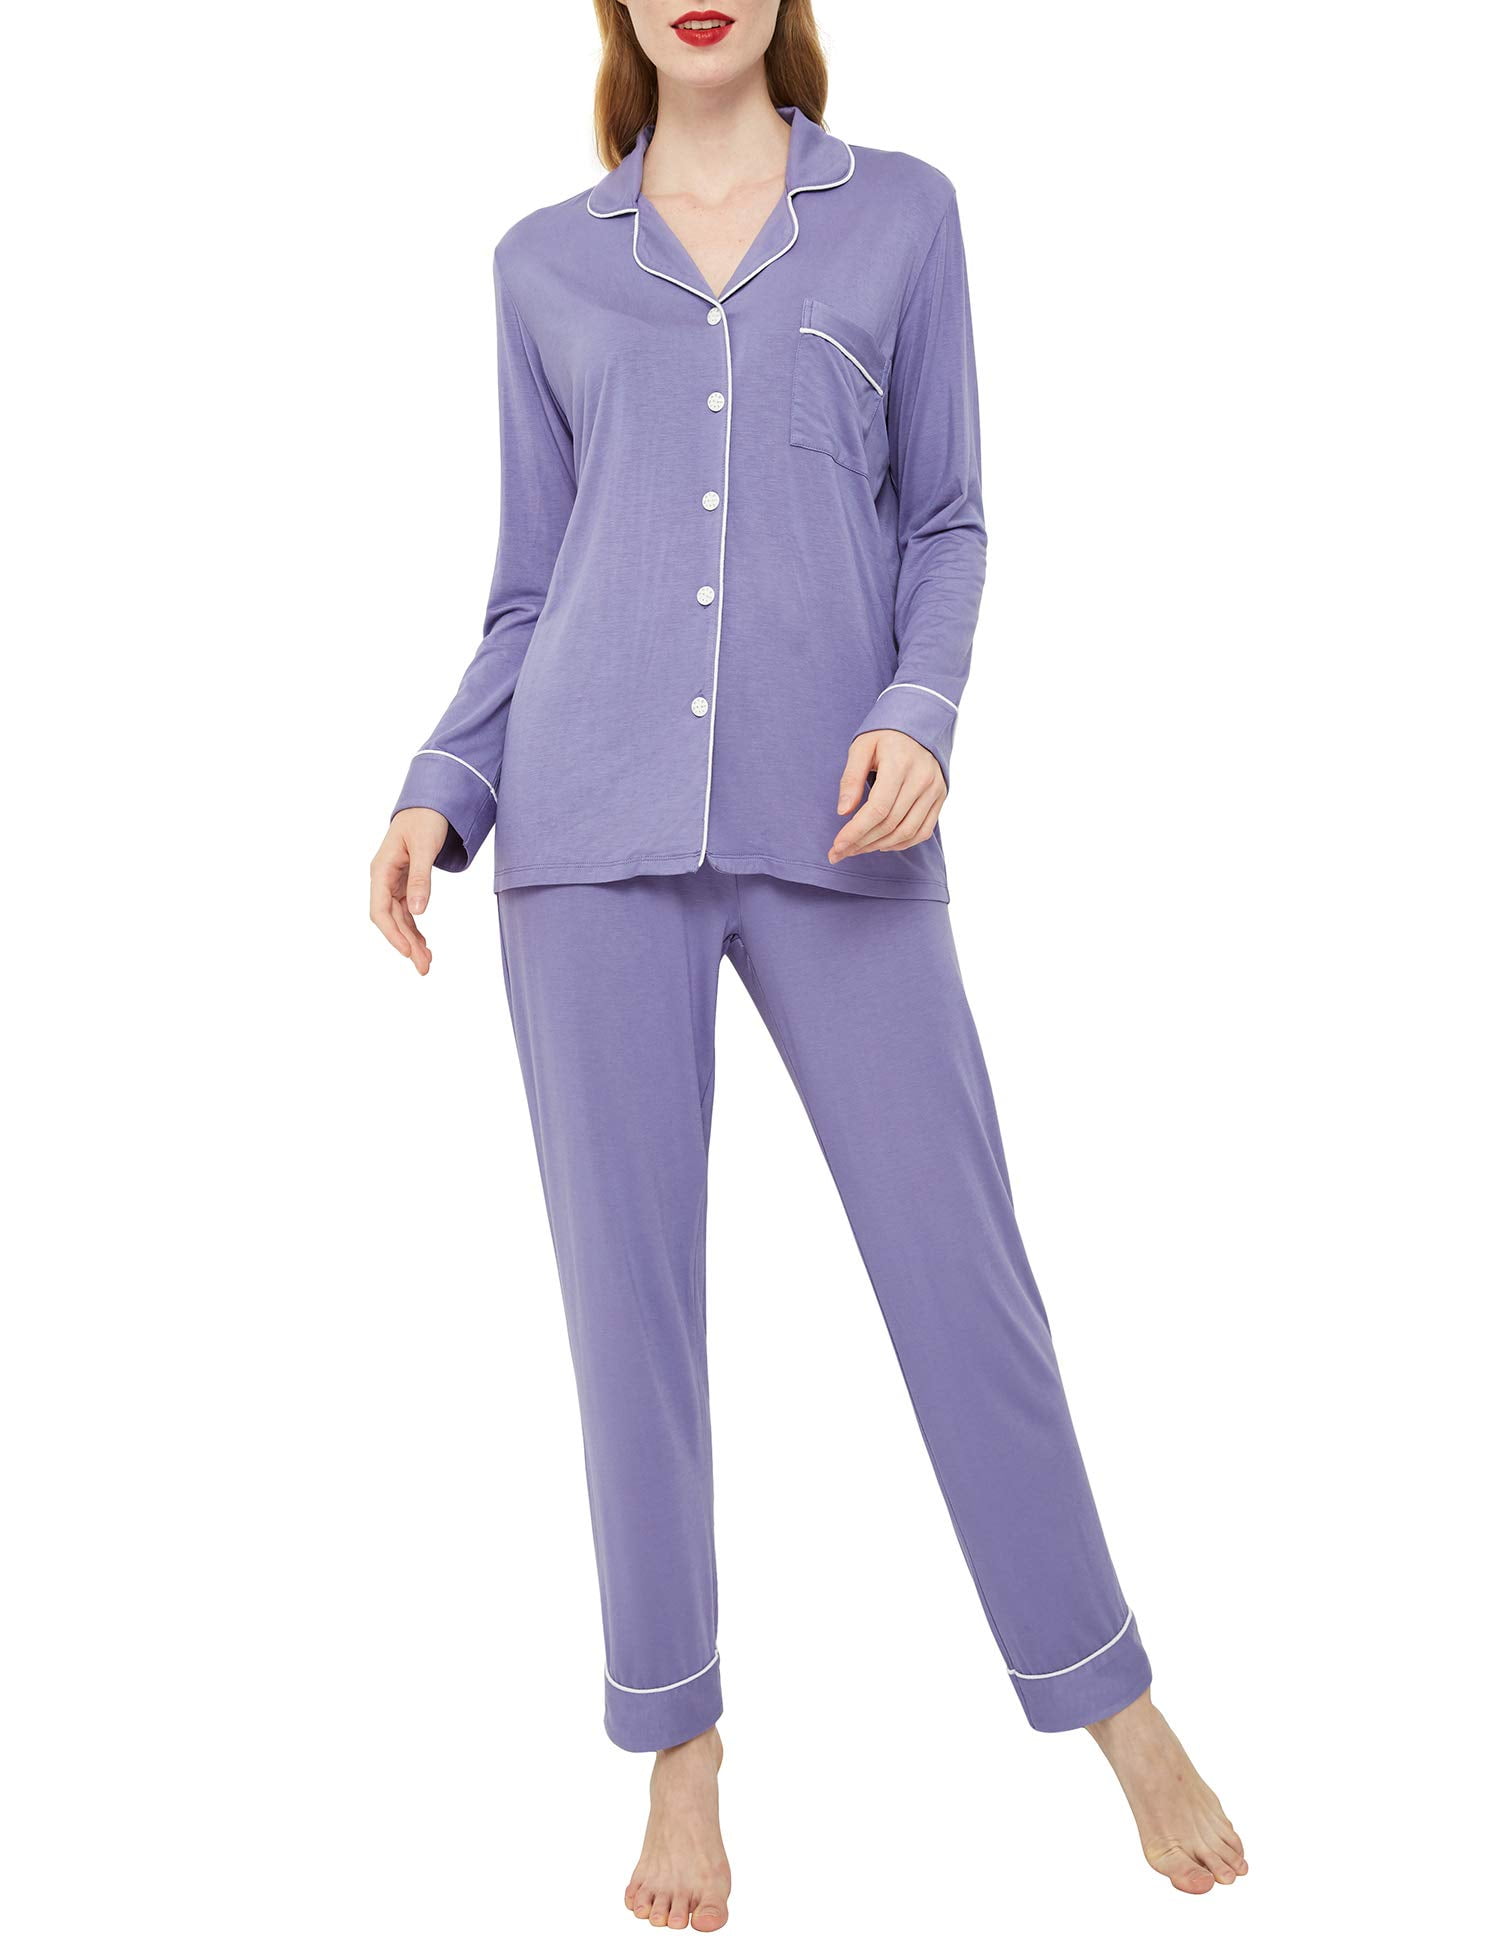 INNERSY Women Pyjamas Set Long Sleeve Button Down Nightwear Soft Loungewear 